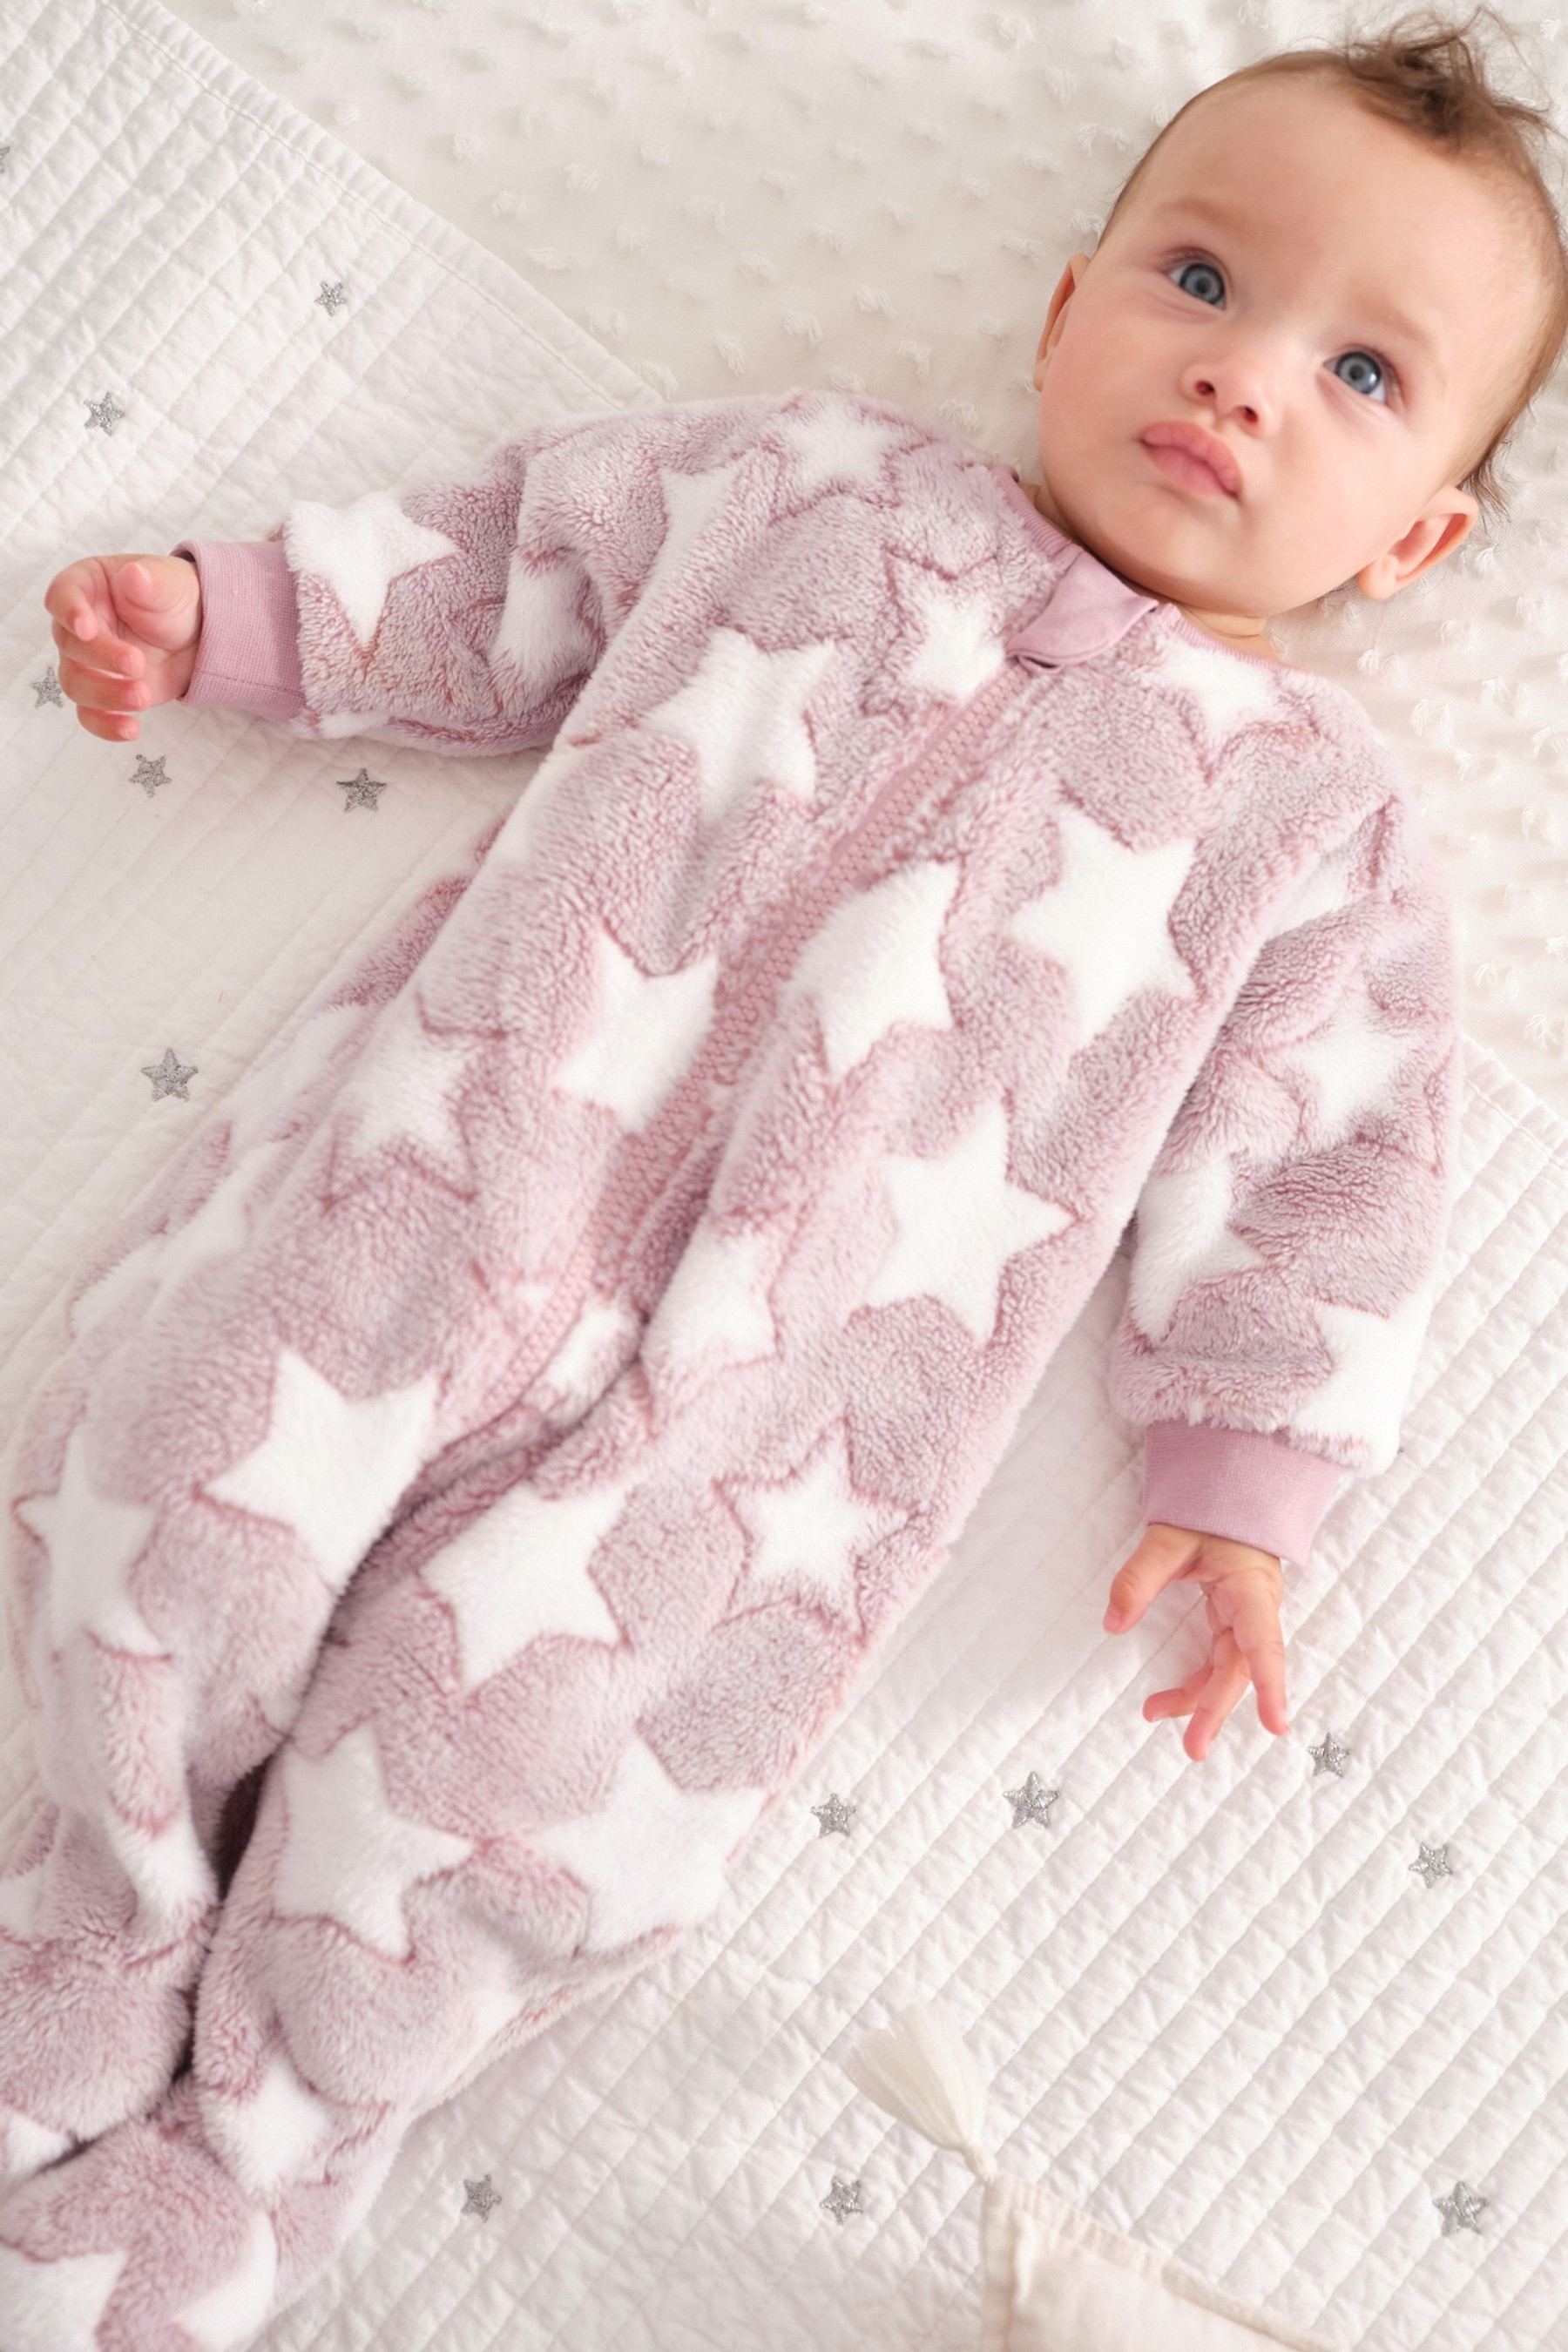 Baby Fleece Sleepsuit (0mths-3yrs)